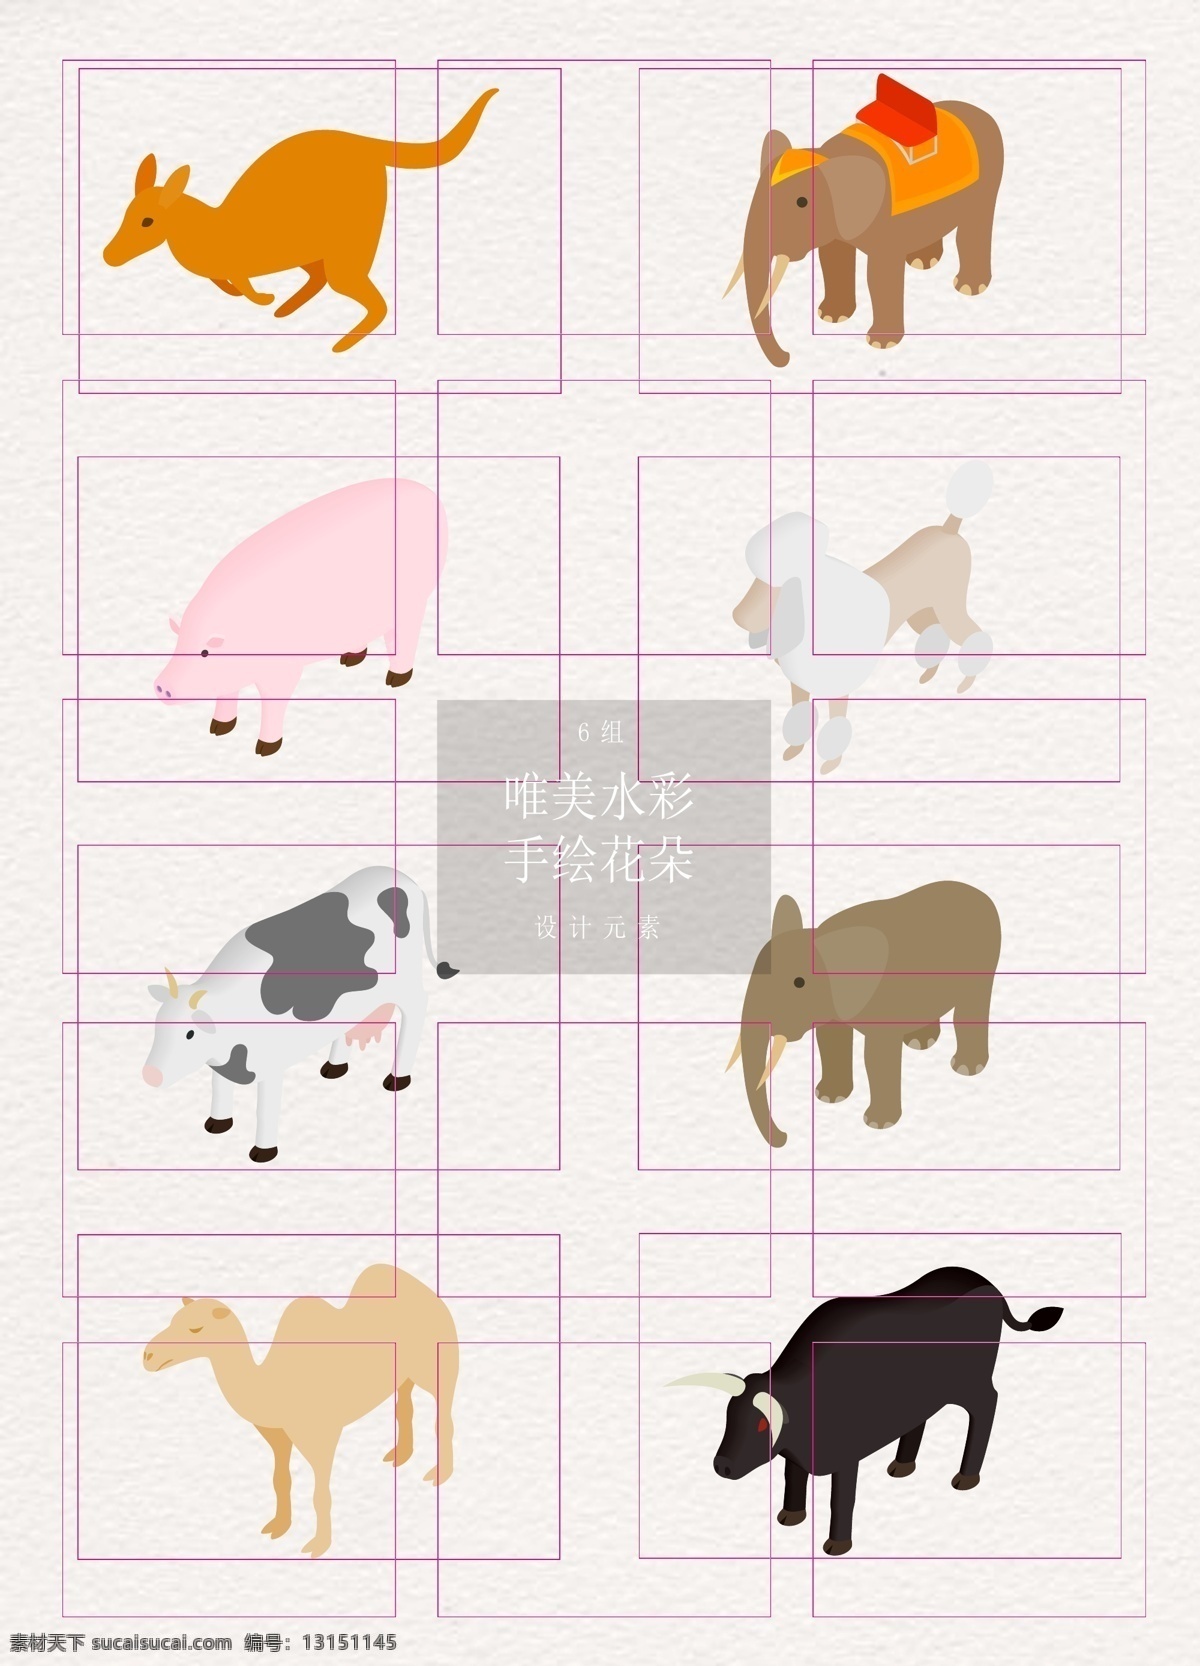 卡通 矢量 动物 元素 矢量图 大象 奶牛 牛 手绘 动物元素 袋鼠 小猪 羔羊 羊驼